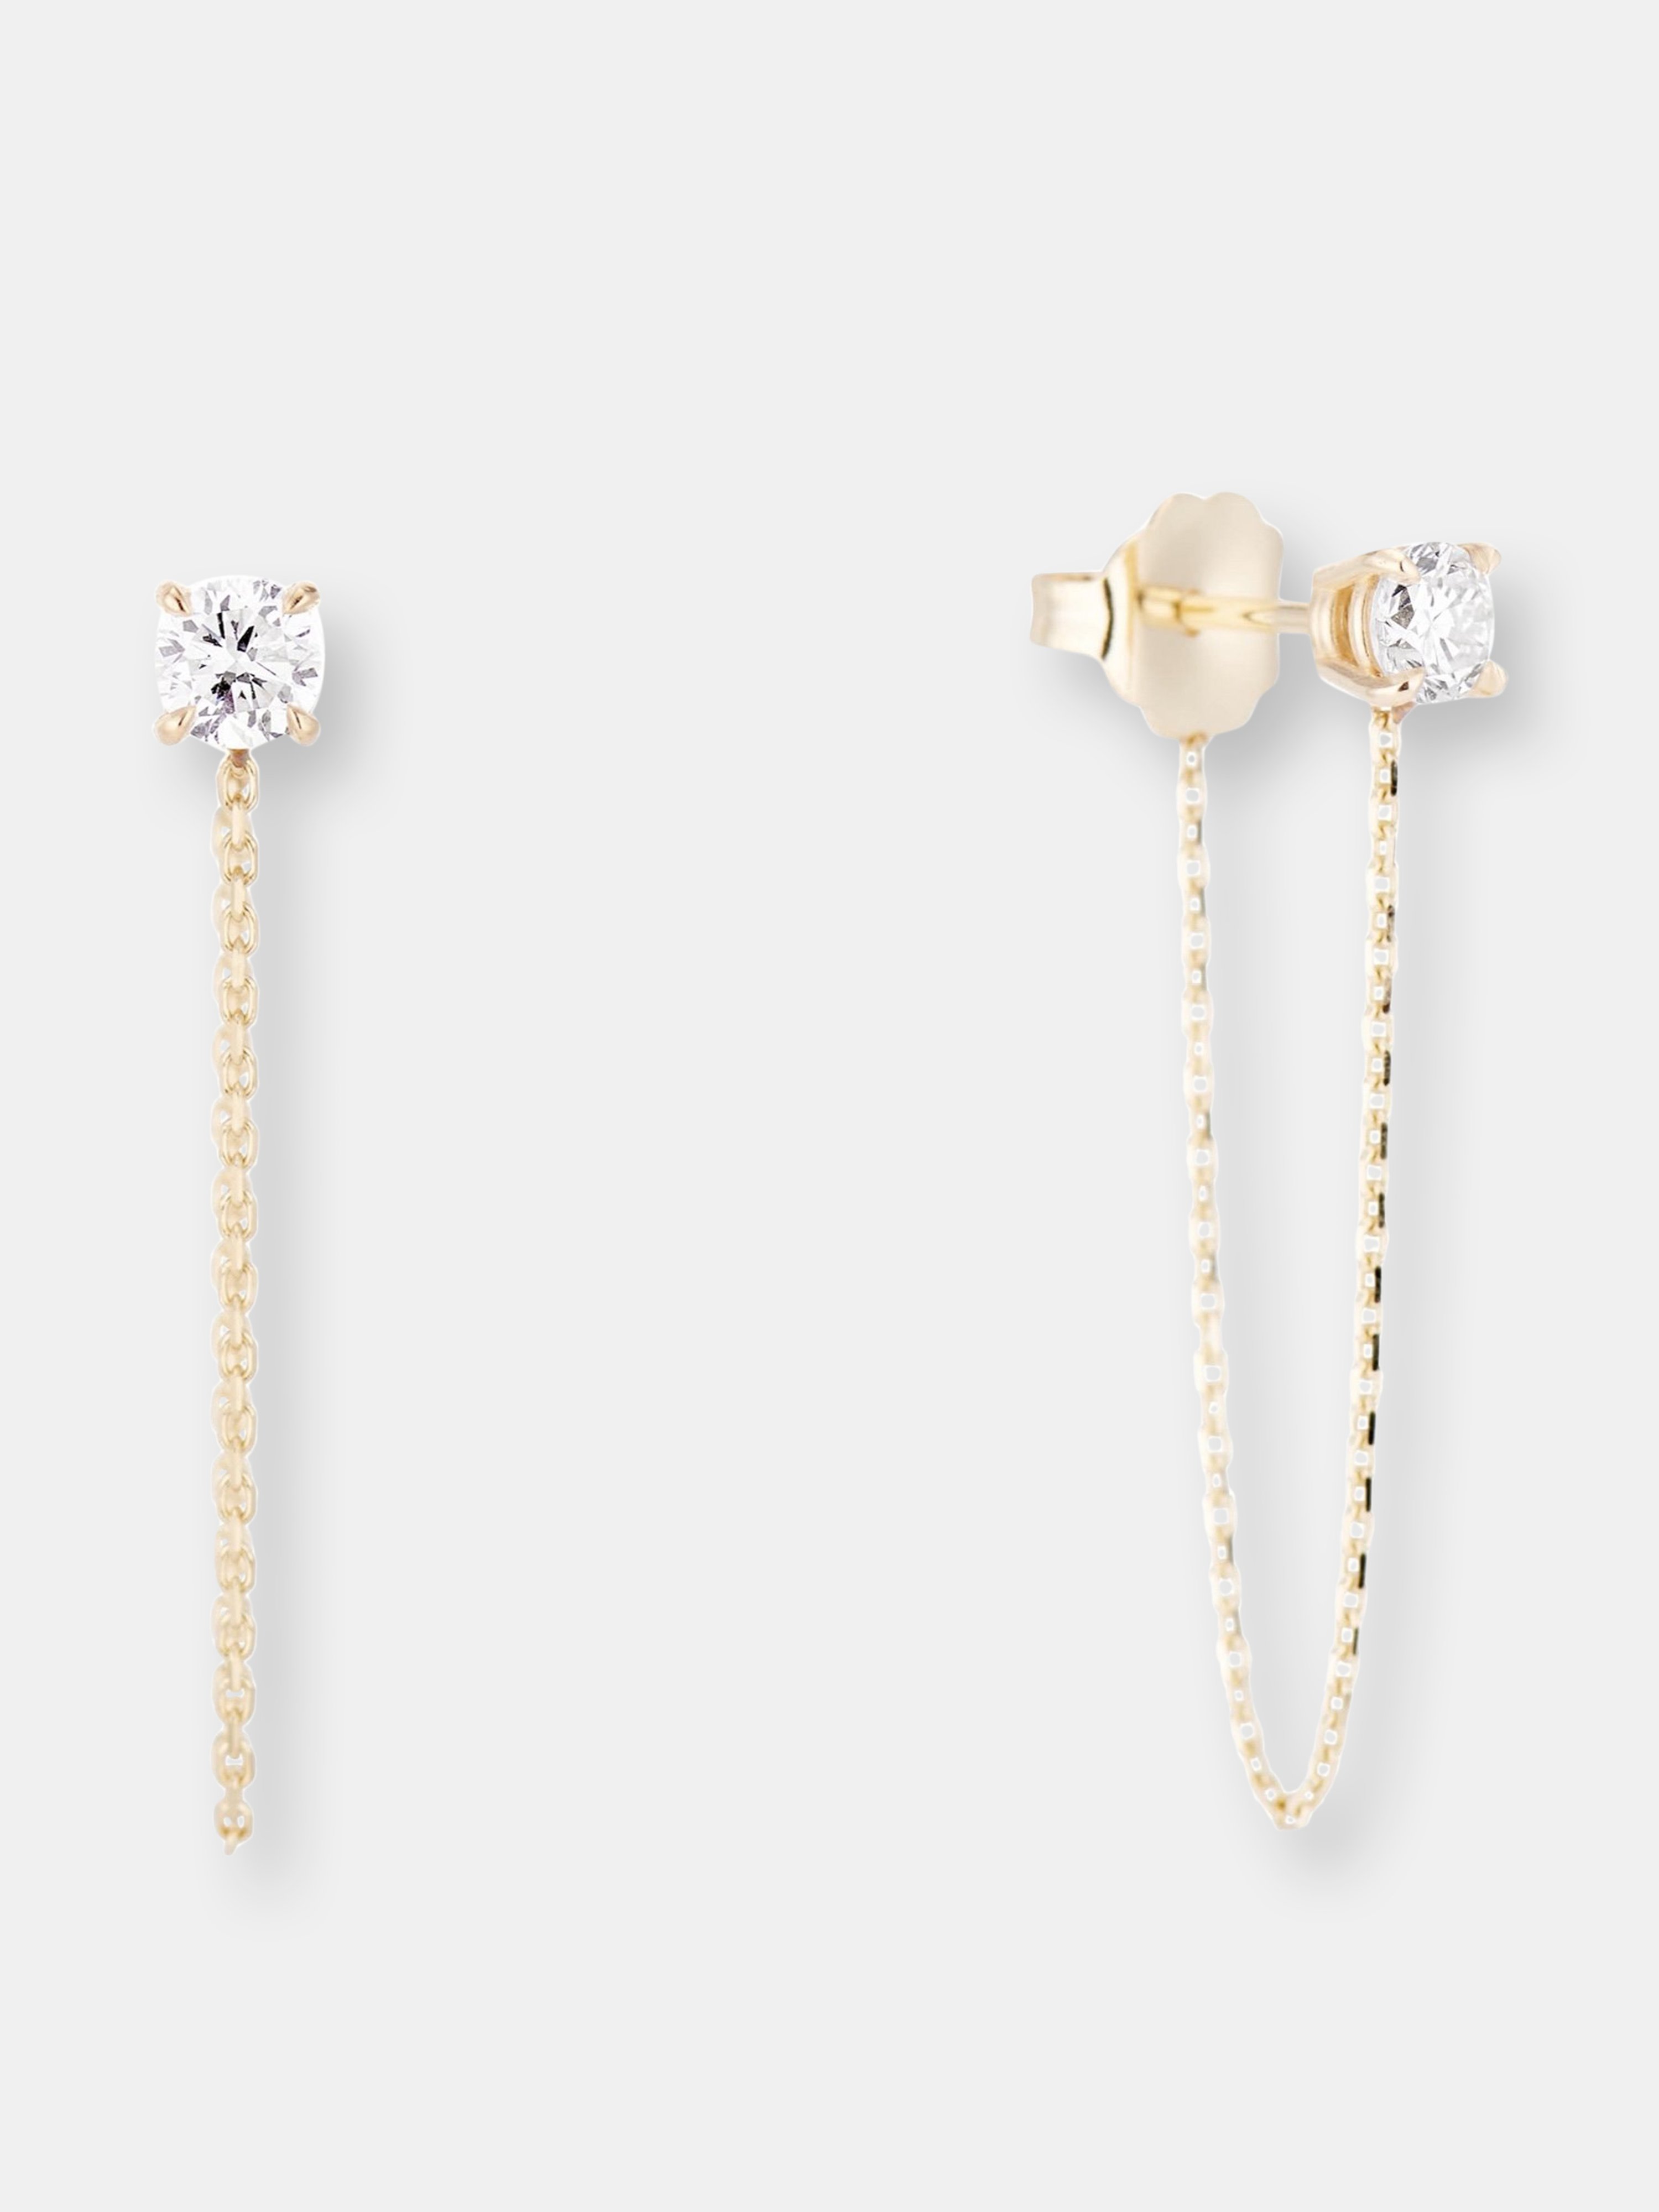 Mimi Shou Tinley Earrings In Gold